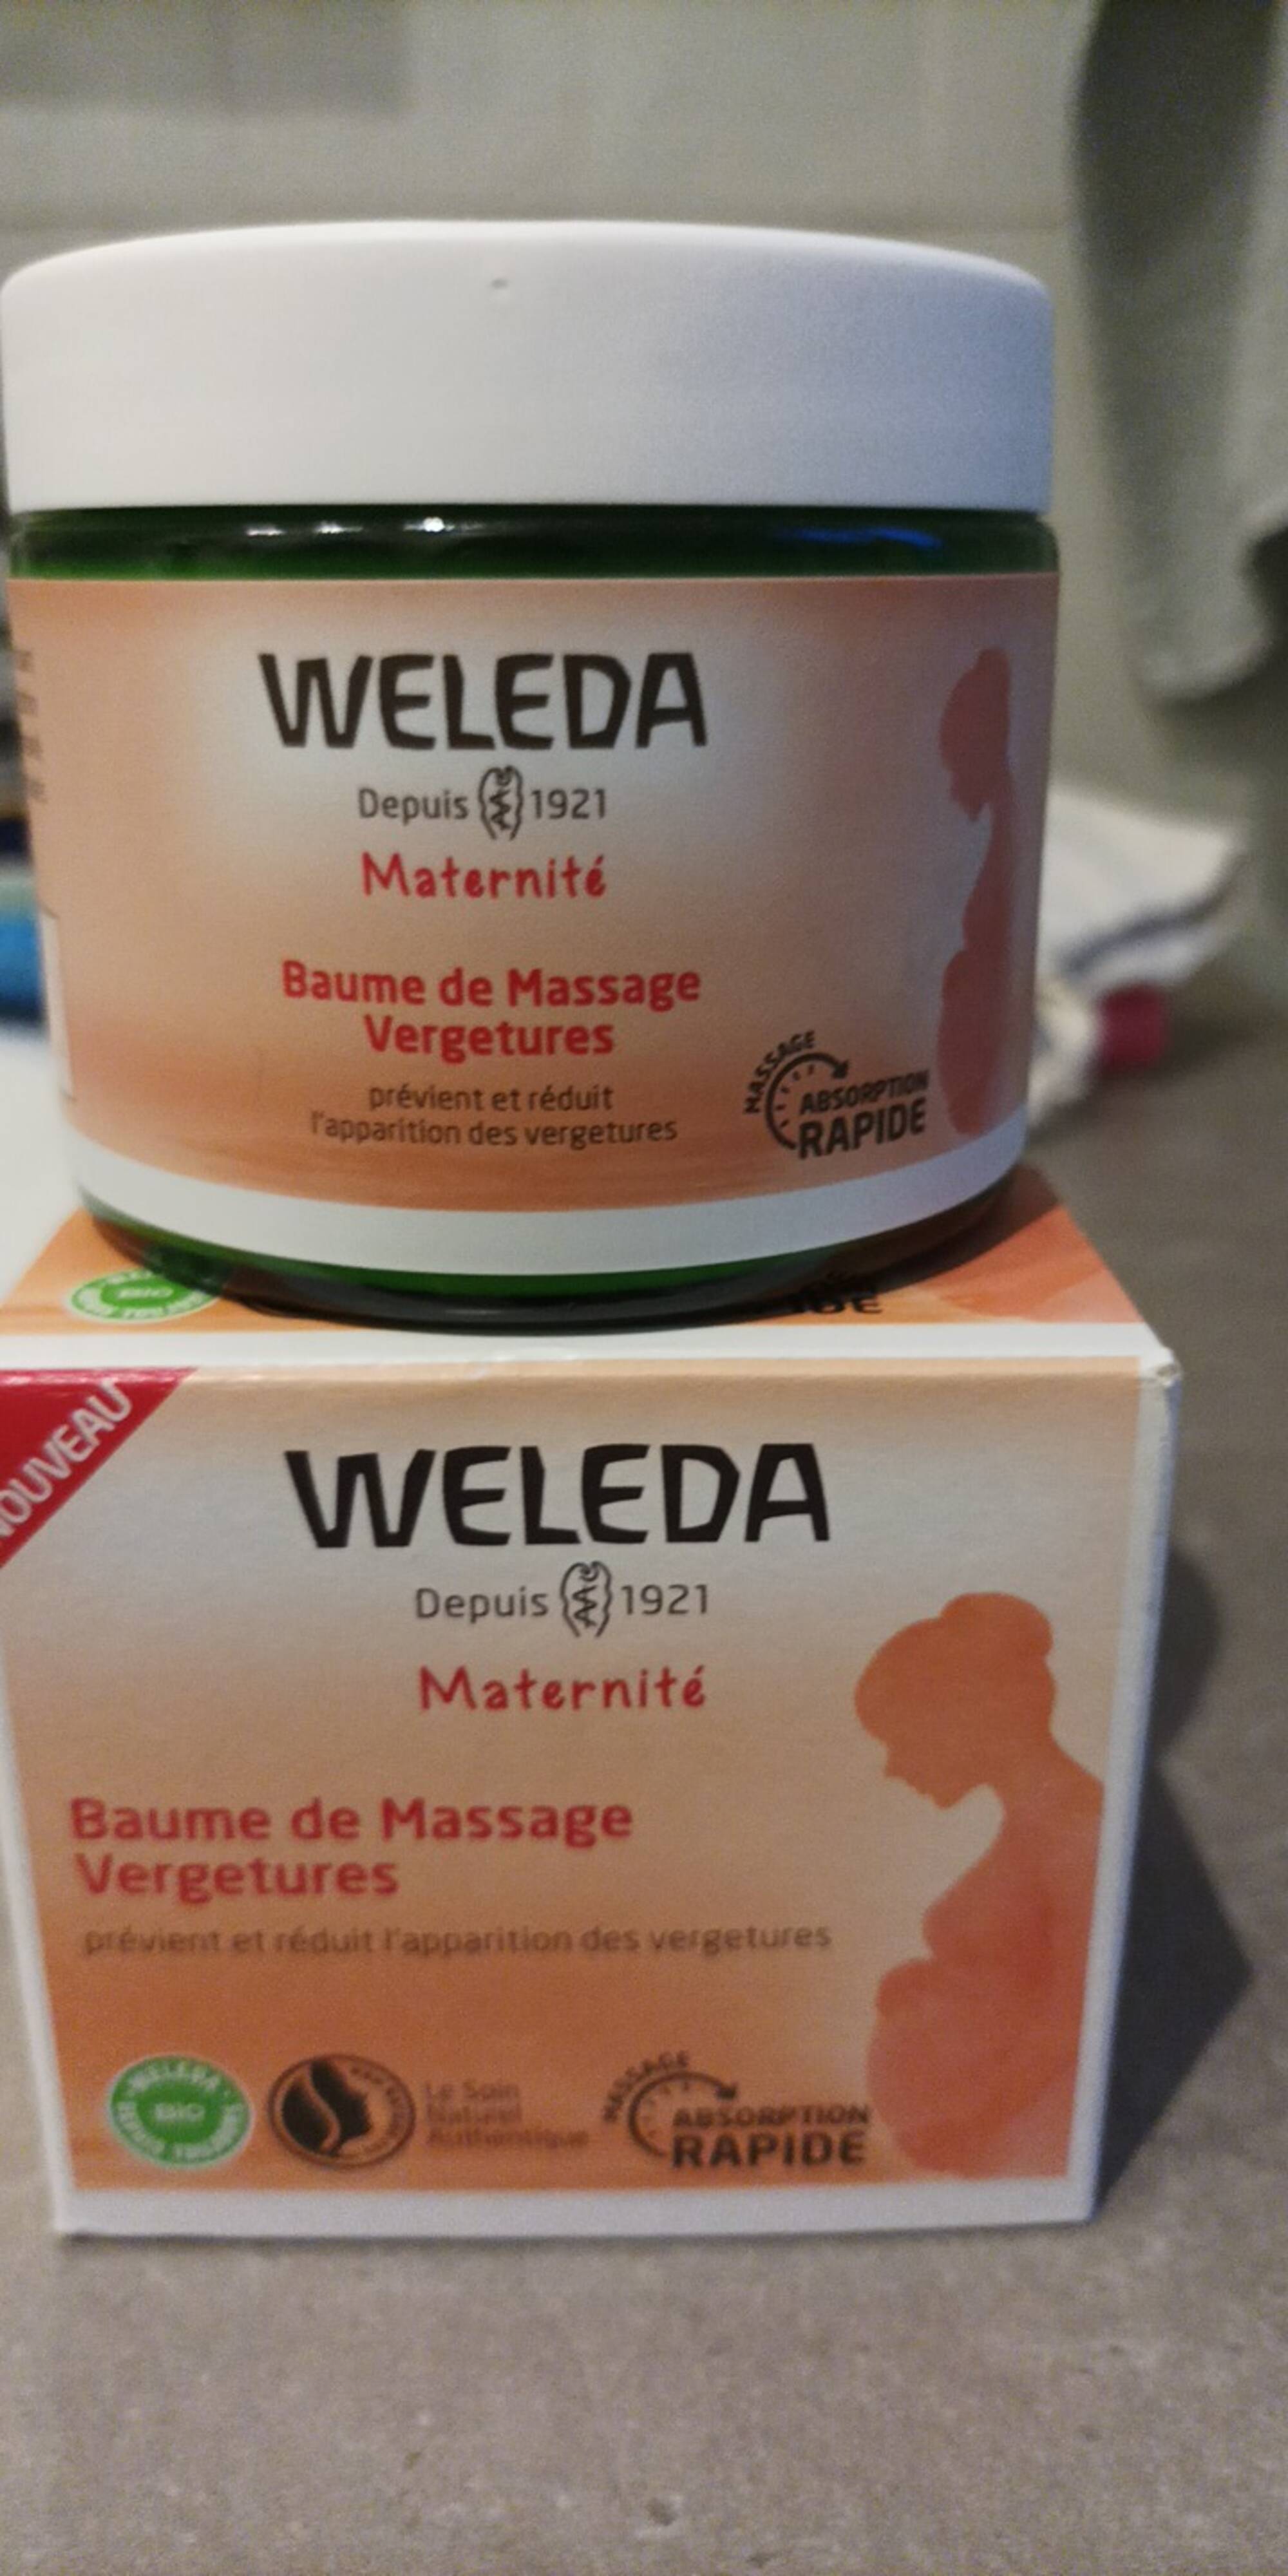 WELEDA - Baume de massage vergetures